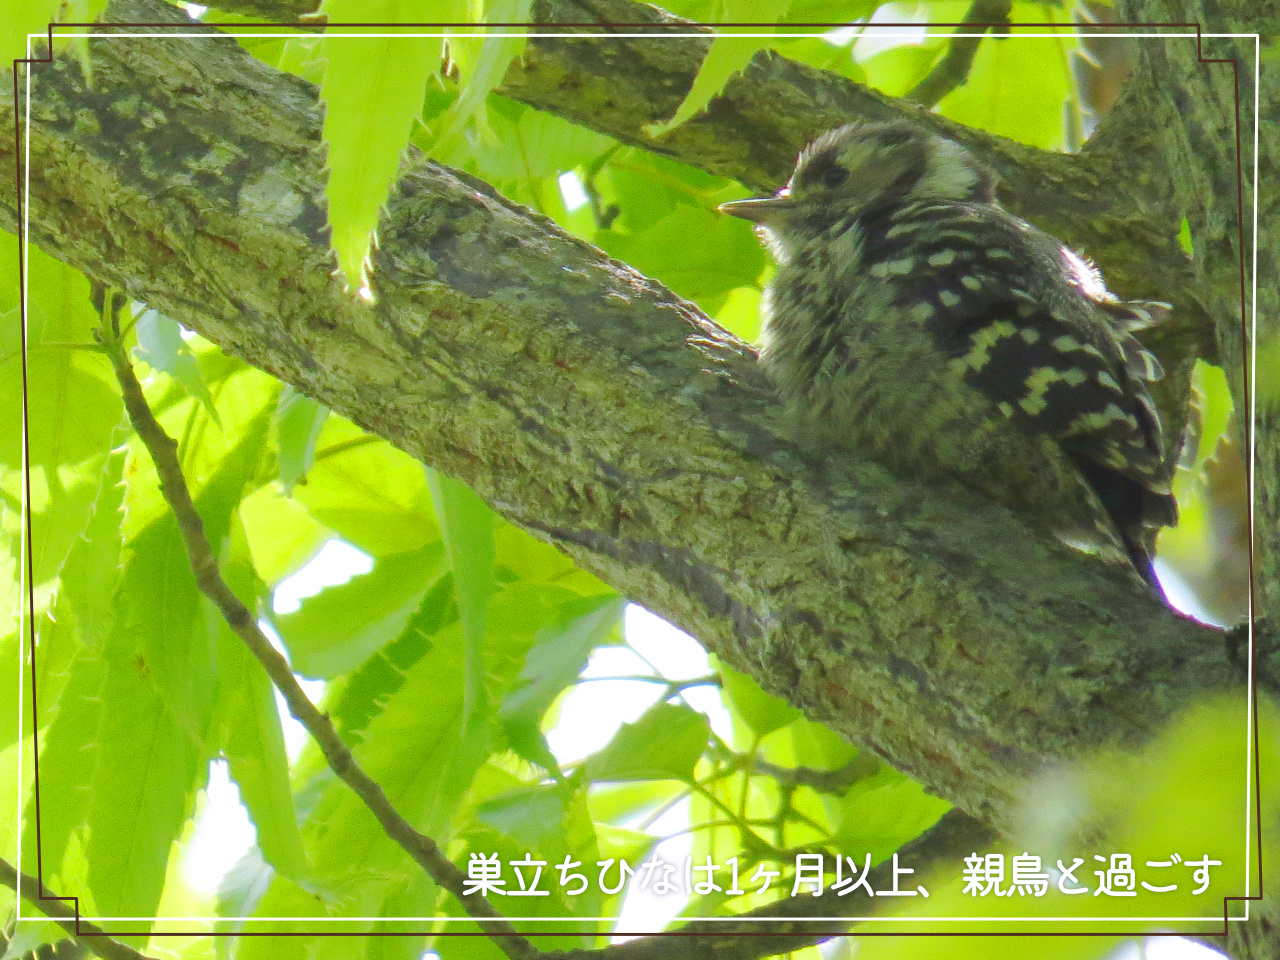 木の上の影で親鳥を待つコゲラの巣立ちひなの写真